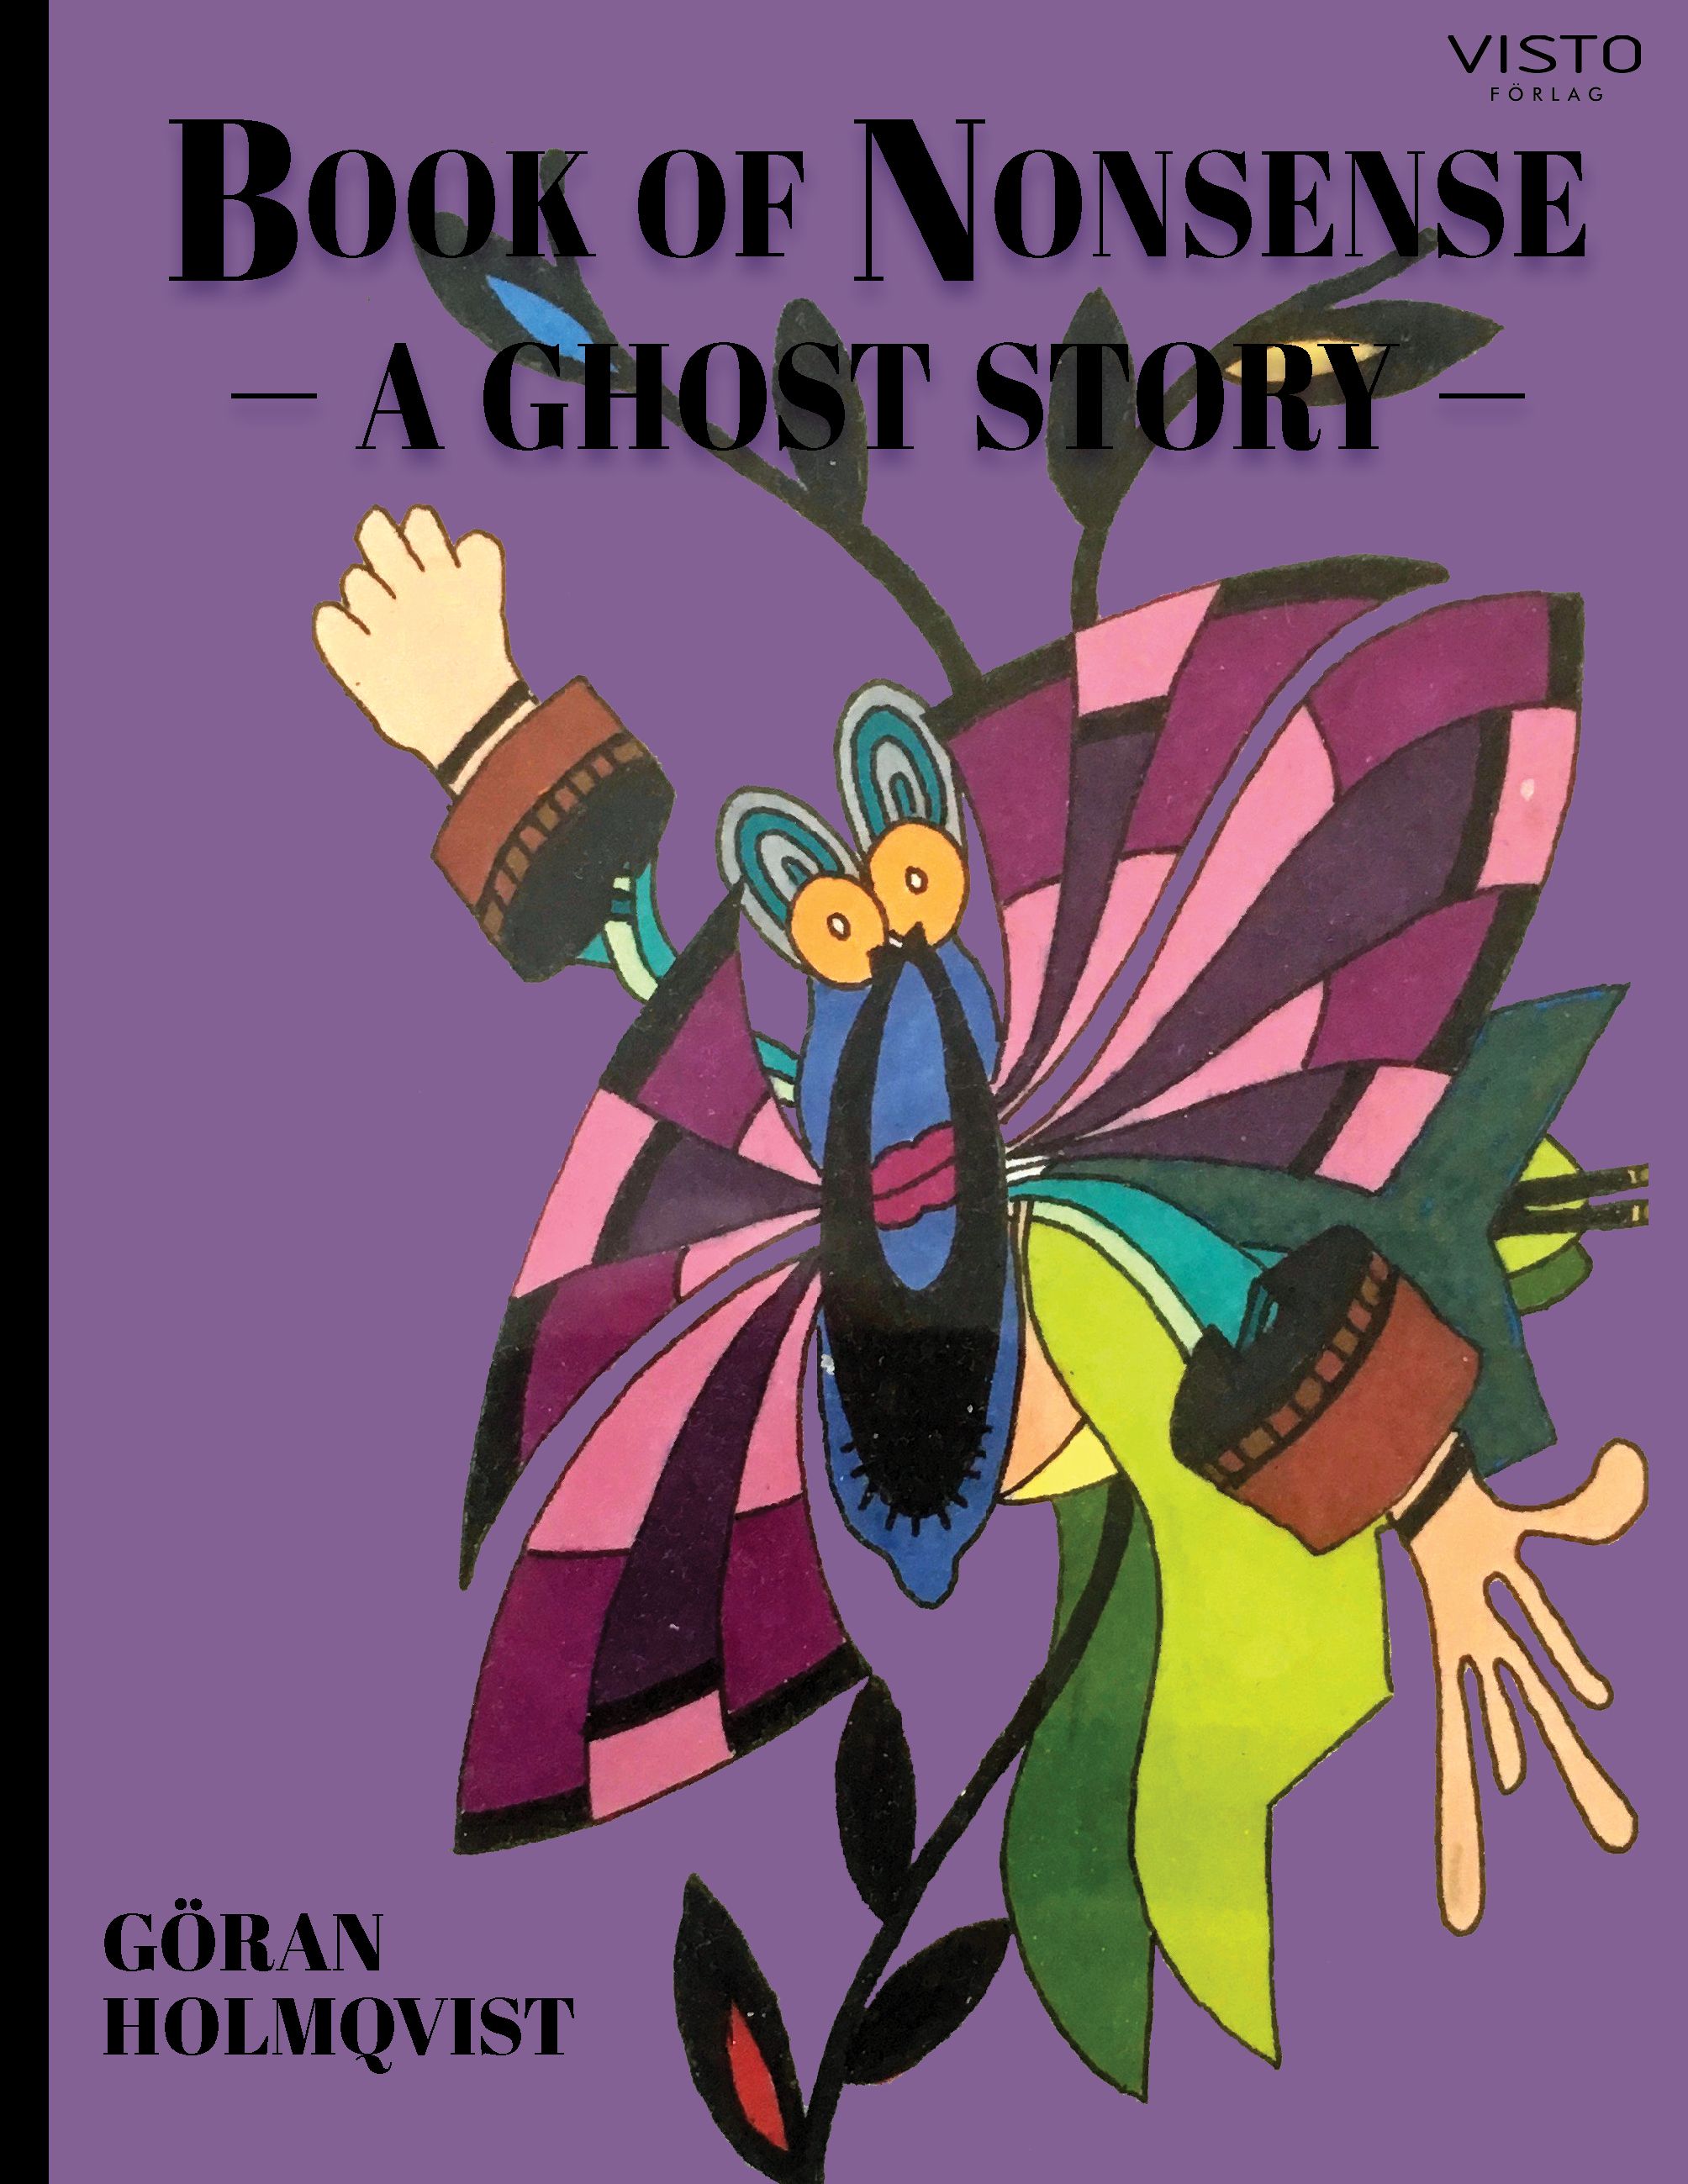 Book of Nonsense - a ghost story, e-bok av Göran Holmqvist